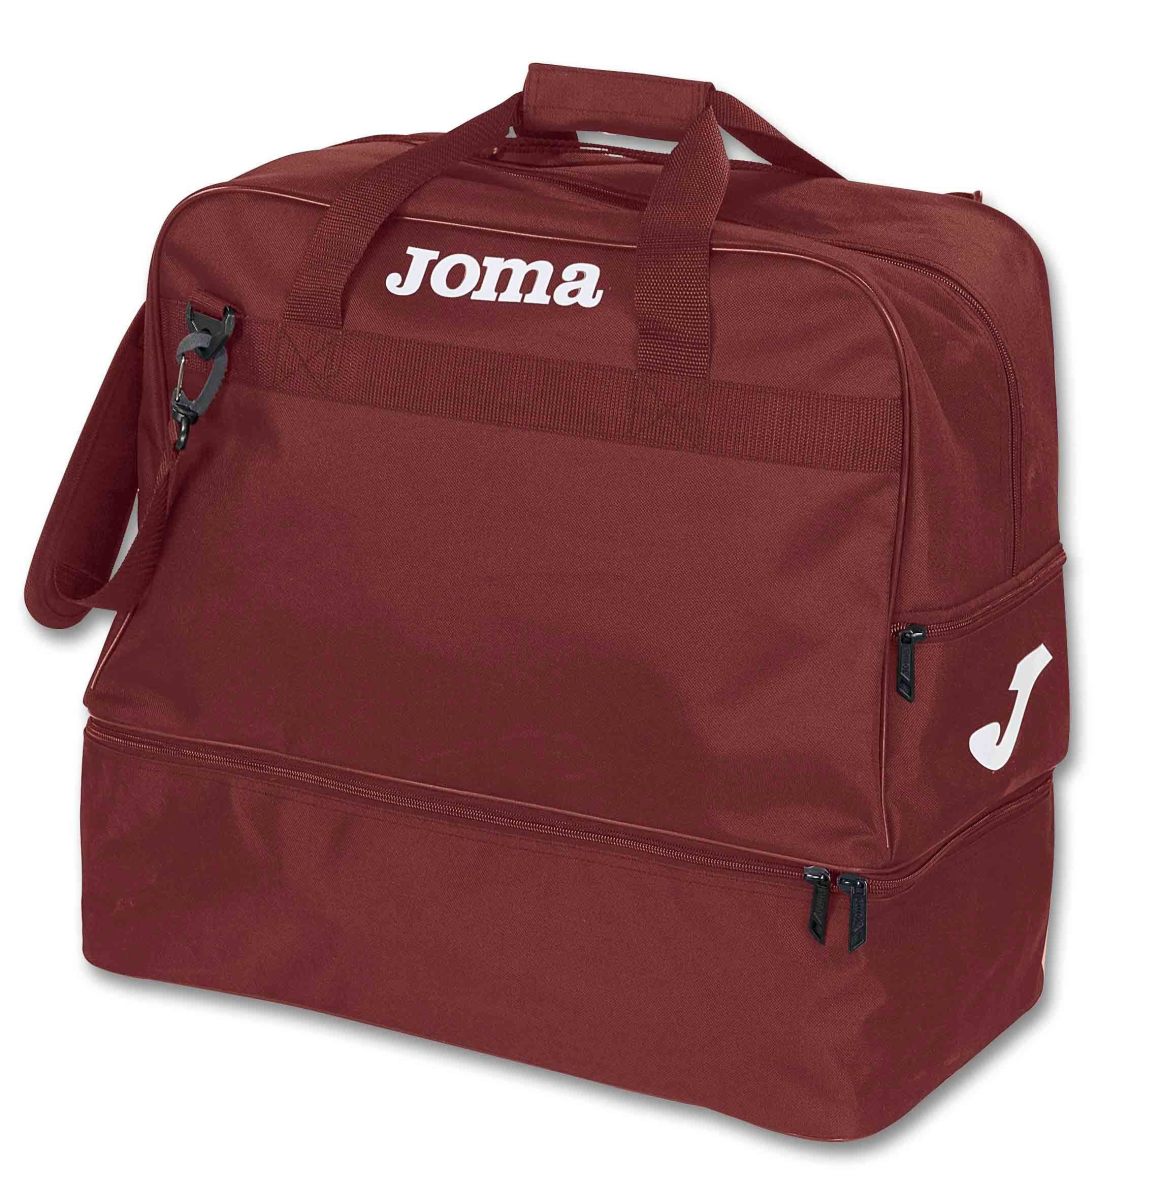 Joma Player Bag